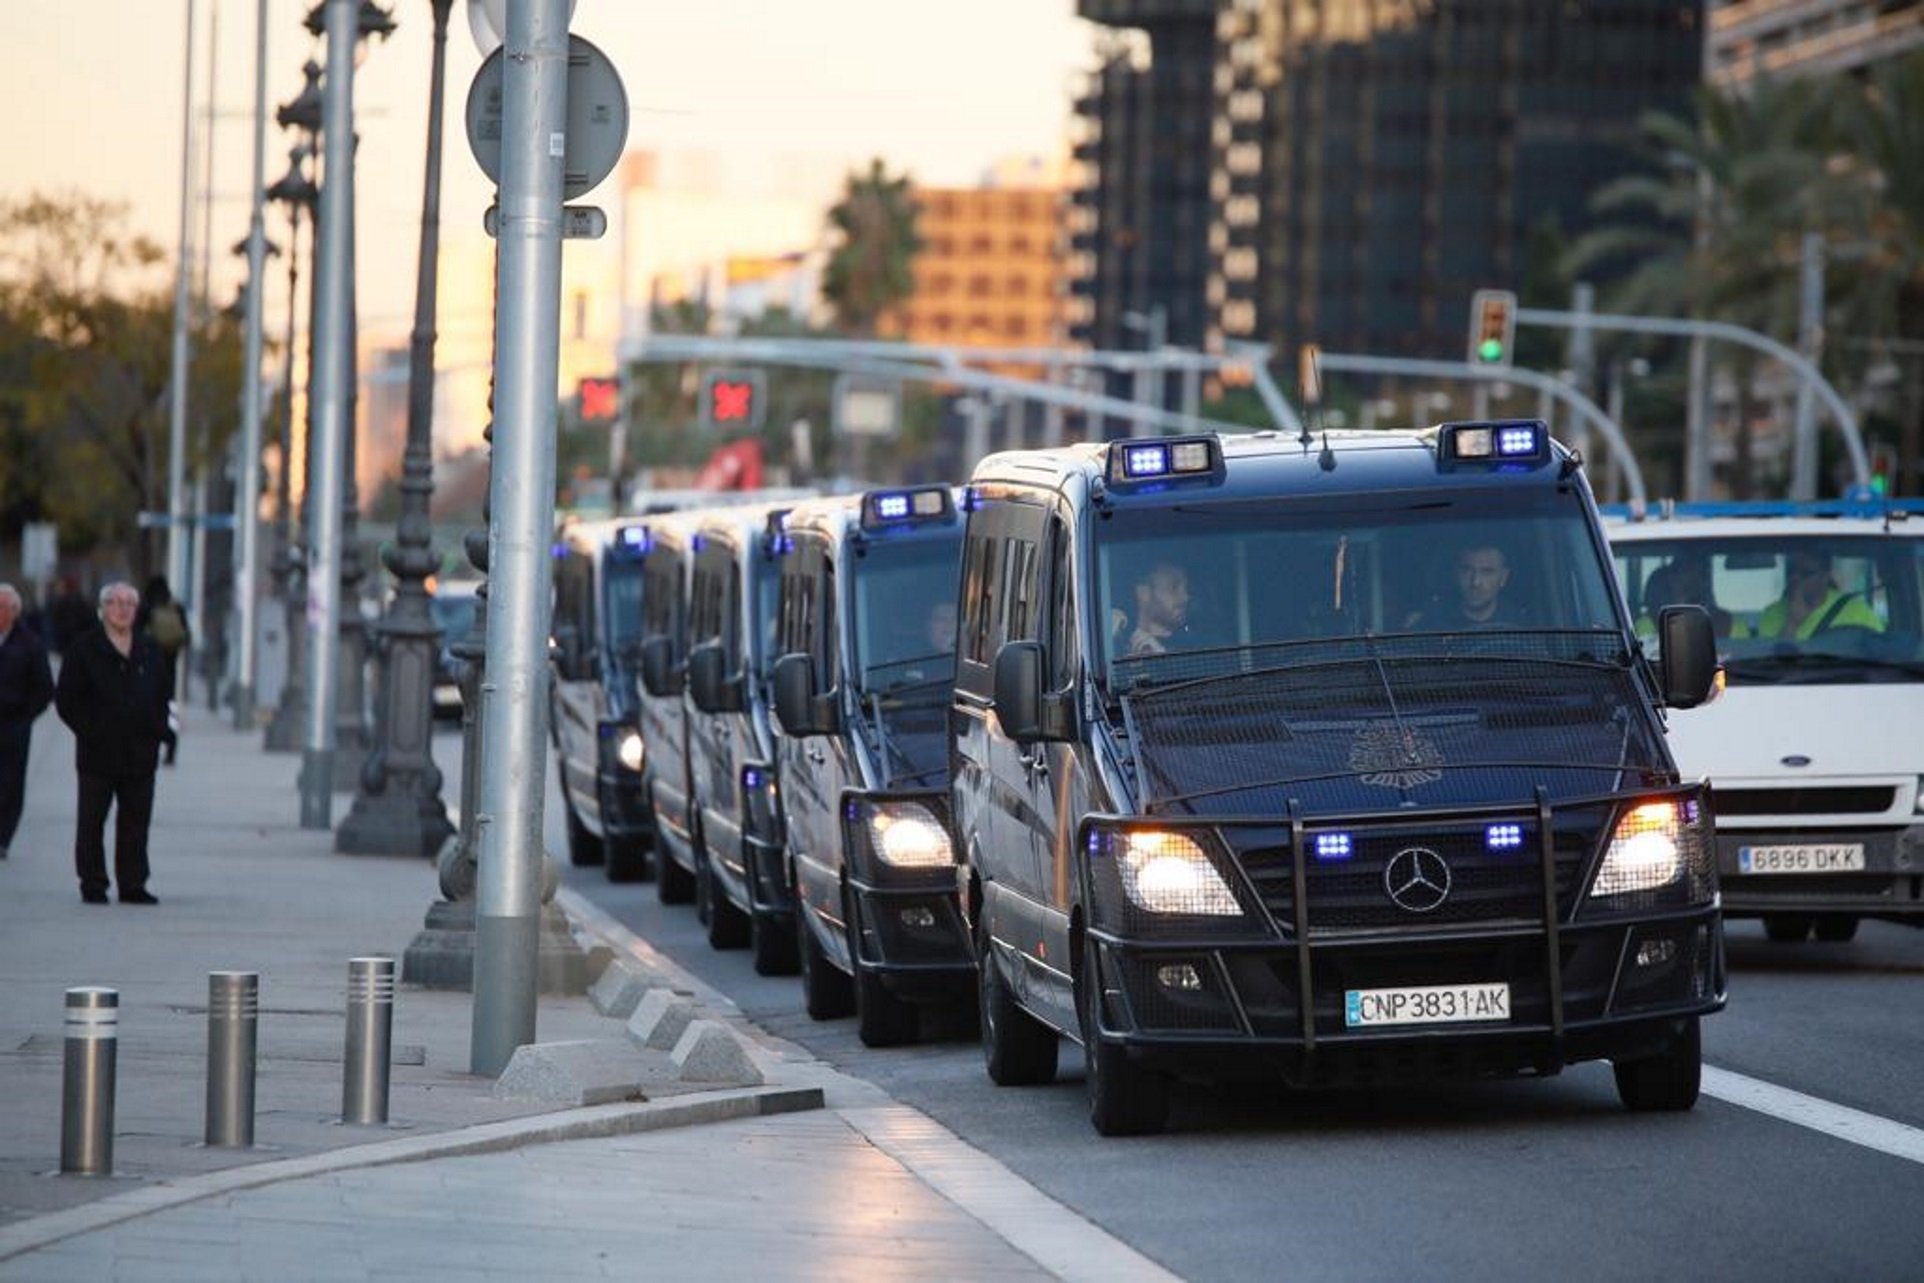 Creus que França acceptaria un acord amb la policia espanyola per detenir Puigdemont?